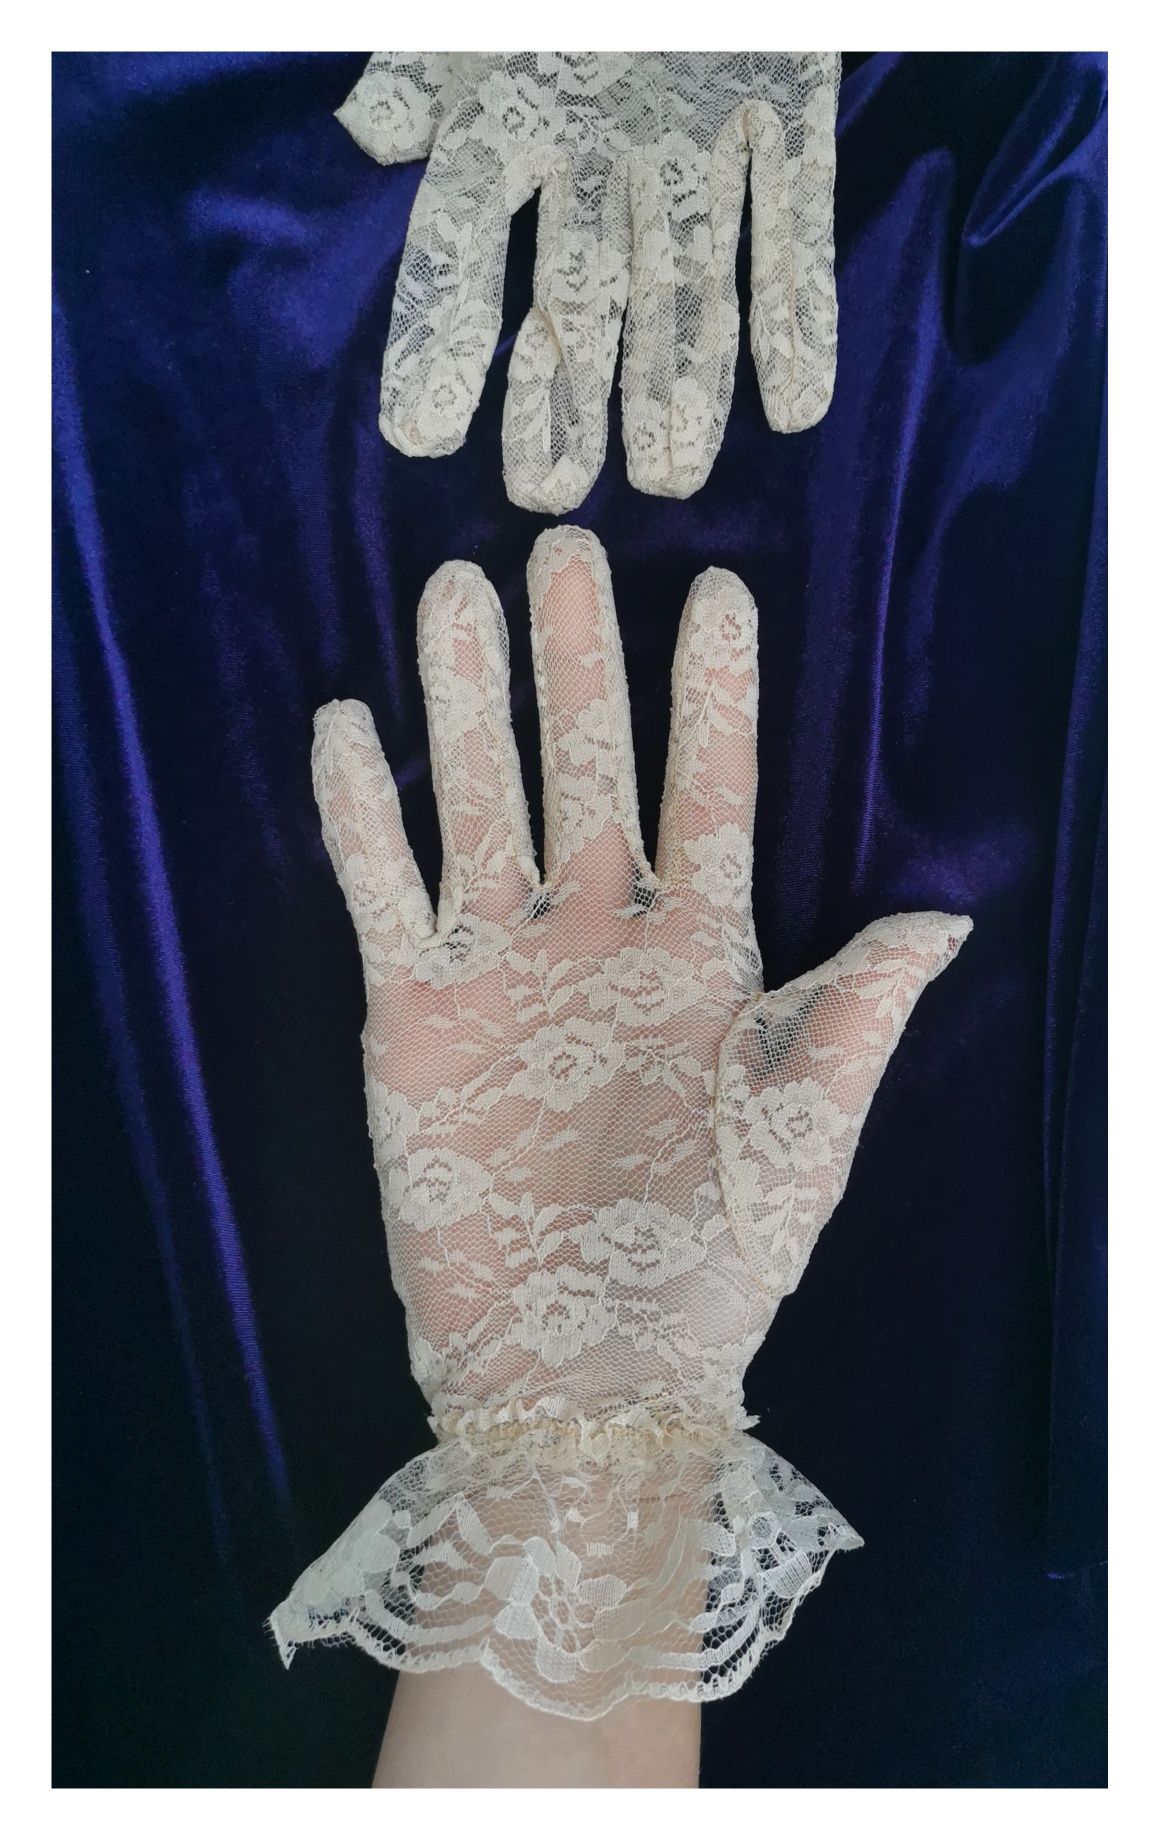 Koronkowe kobiece rękawiczki (rozm. uniwersalny) #rustykalne #vintage